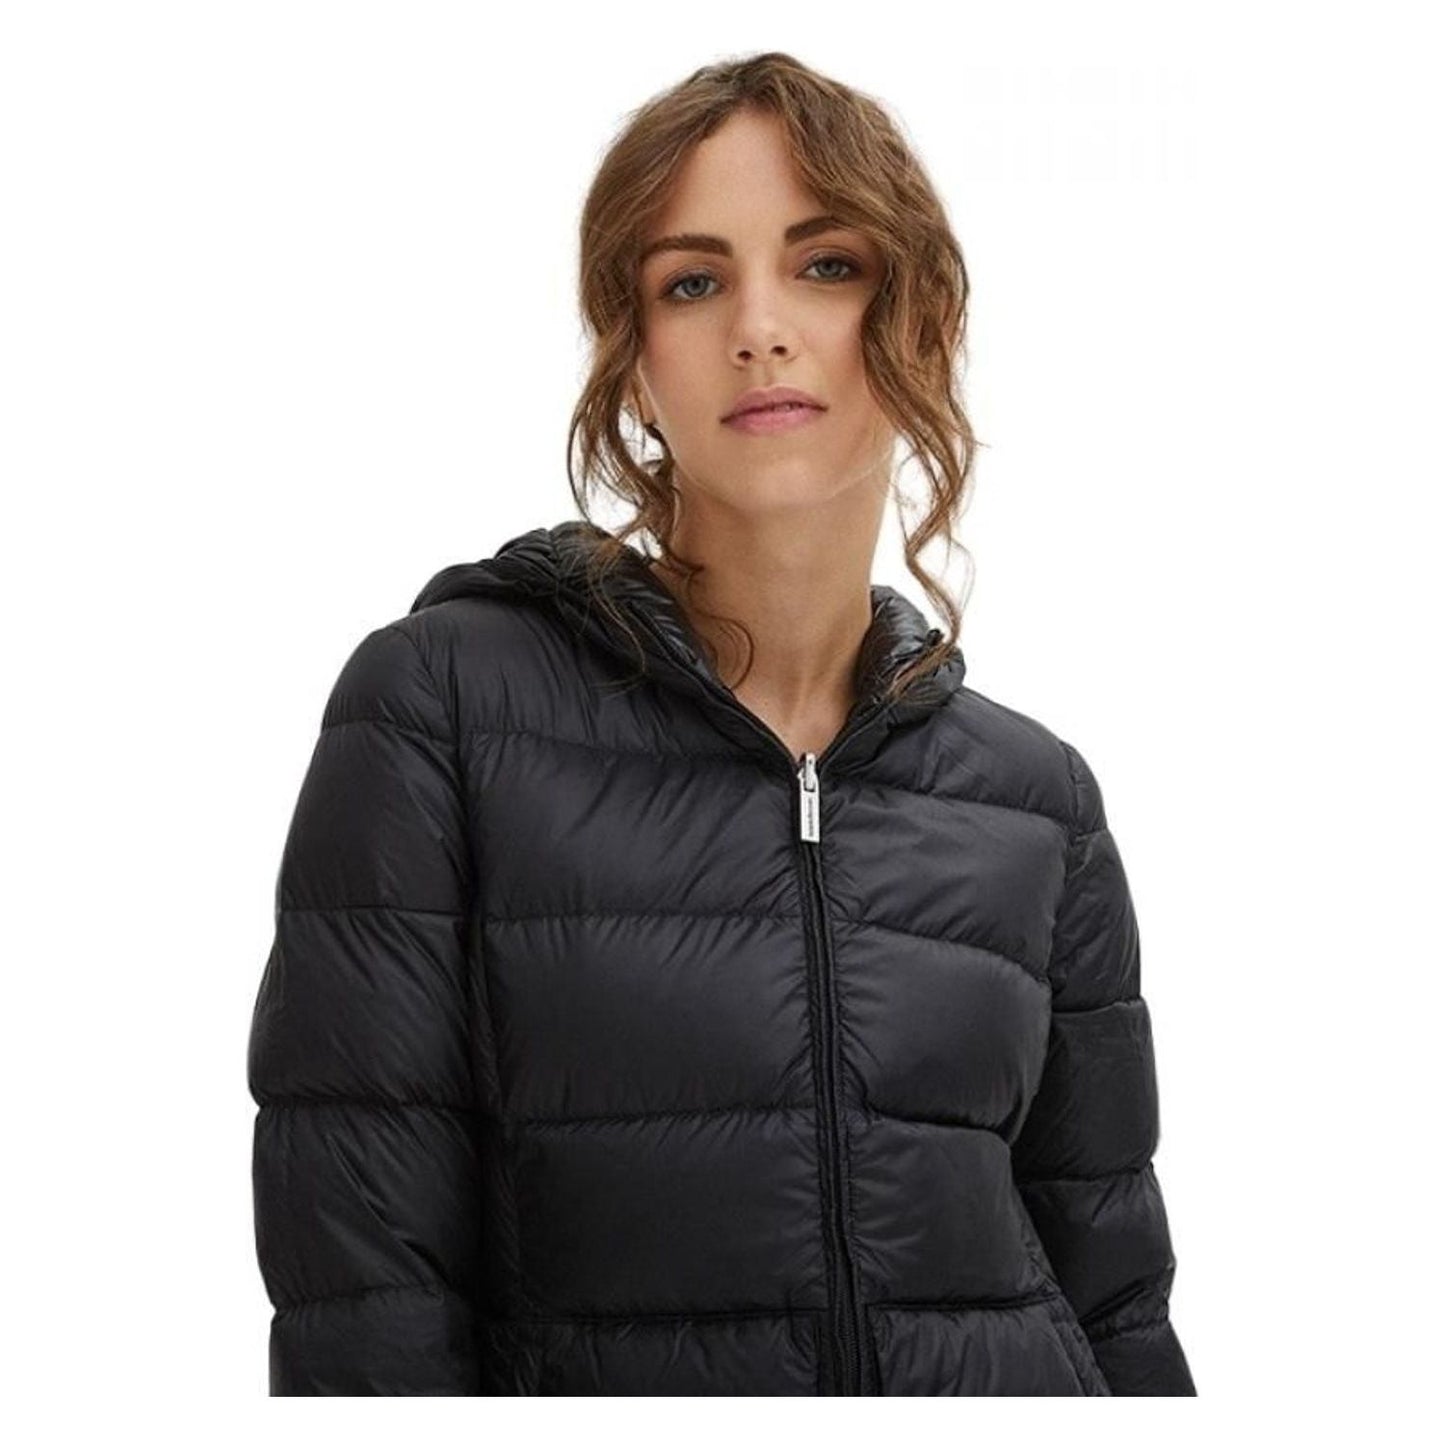 Centogrammi Sleek Nylon Down Jacket with Hood black-nylon-jackets-coat-3 product-8588-251476367-b617700a-4d3.jpg